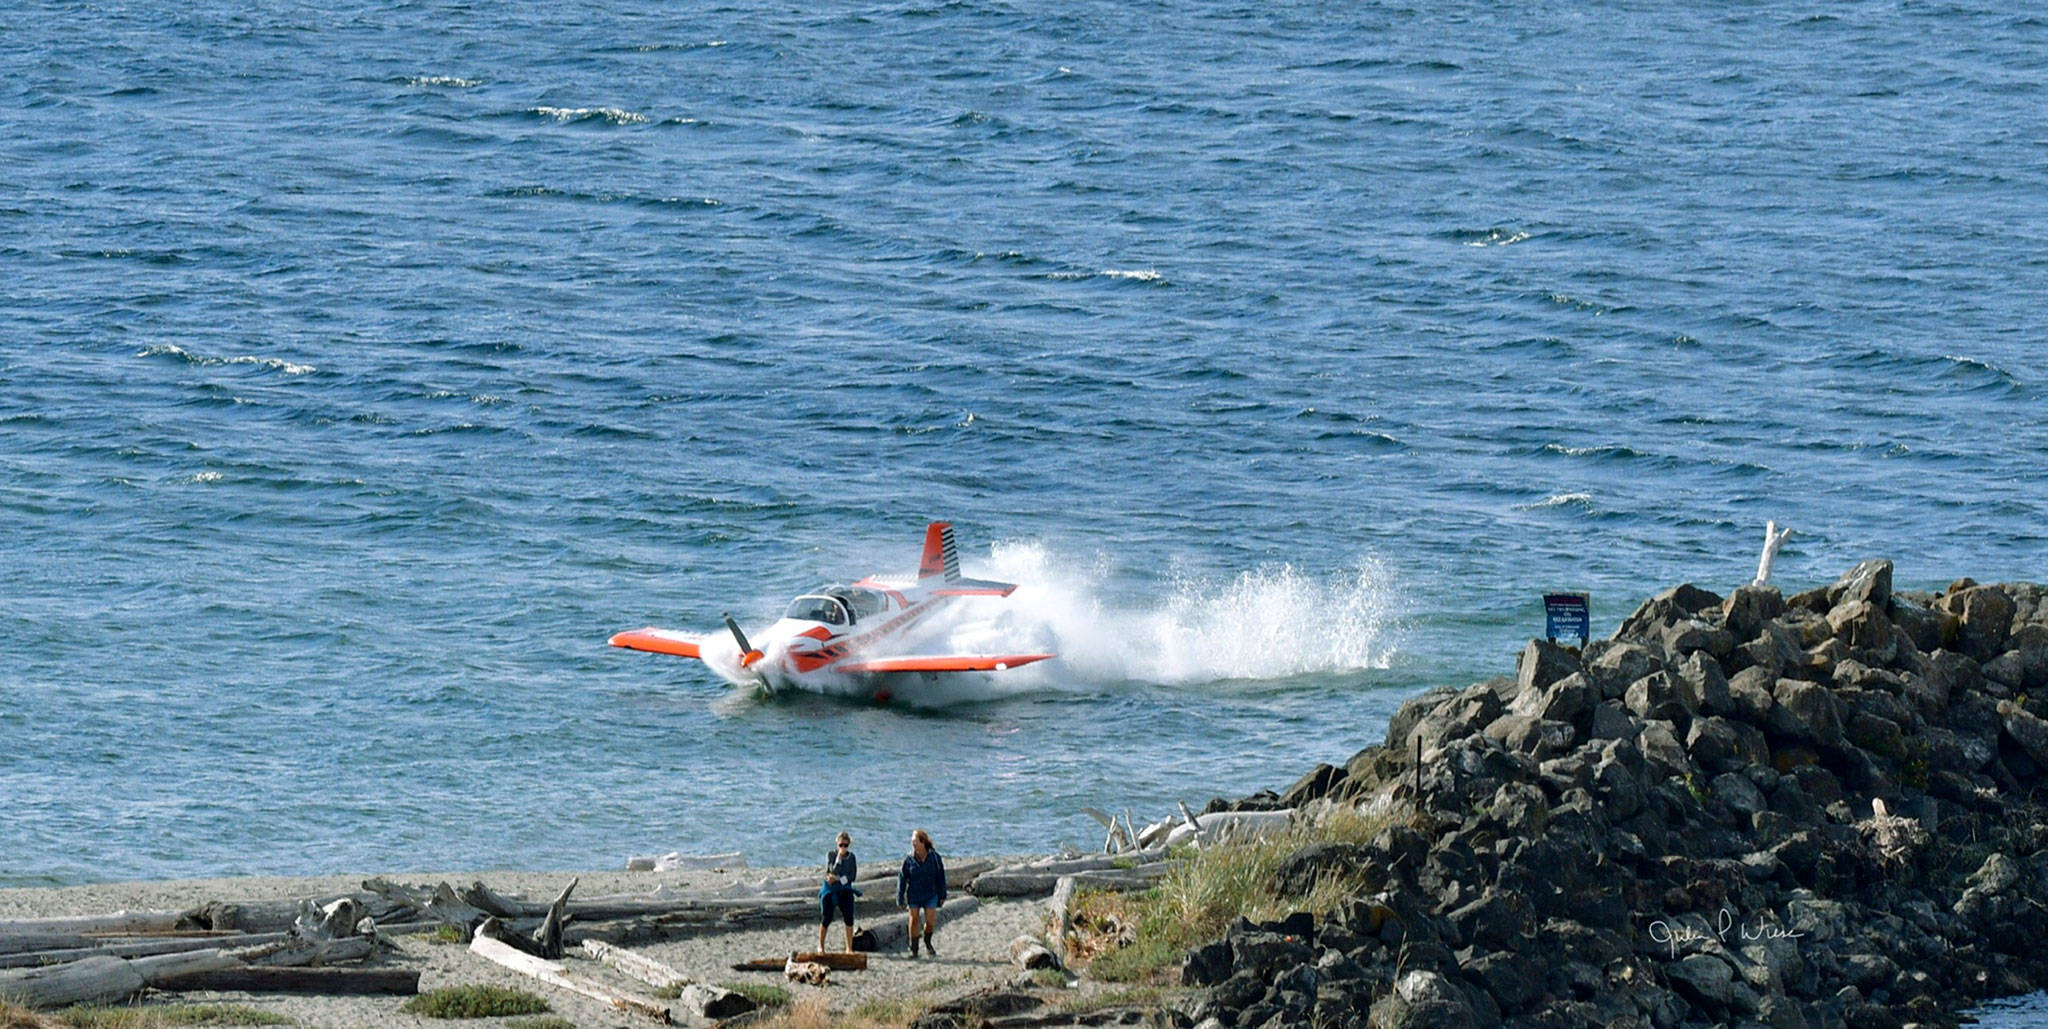 A small plane crash lands in the water near Edmonds on Thursday. (Julia Wiese/<a href="https://myedmondsnews.com/2021/08/pilot-safe-after-small-plane-crashes-in-water-near-edmonds-marina-beach-thursday-afternoon/" target="_blank">MyEdmondsNews</a>)